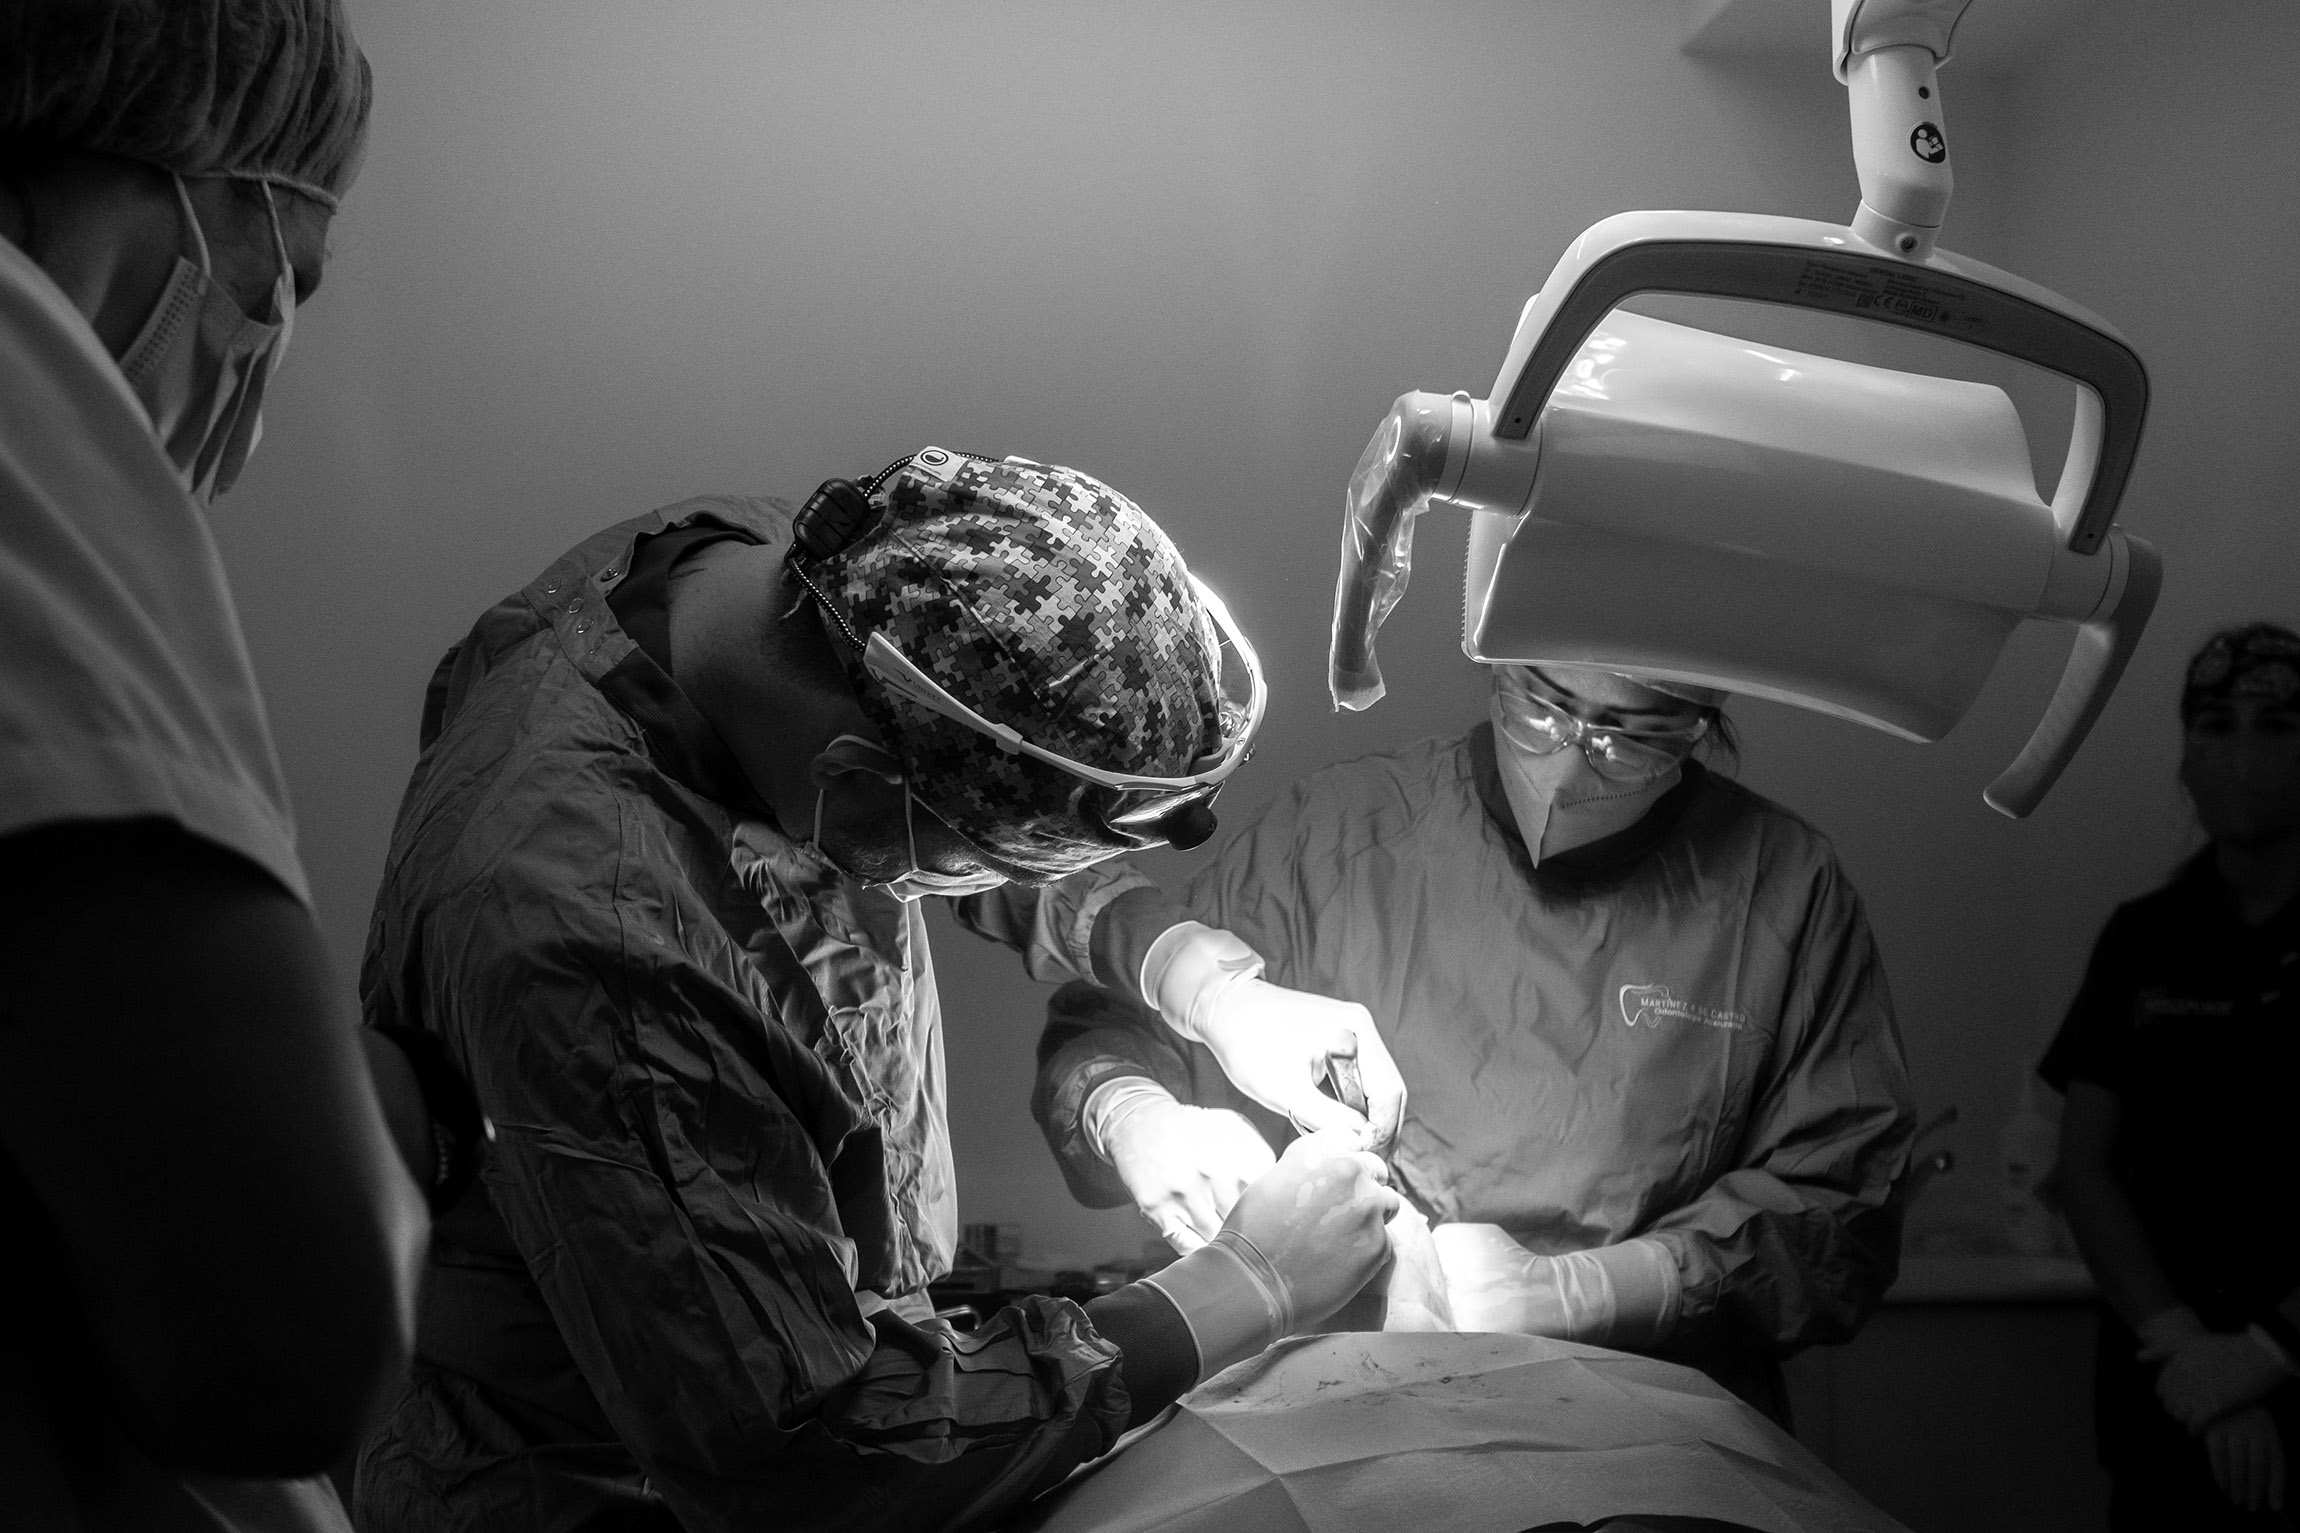 intervención quirúrgica de reconstrucción del maxilar pionera en Galicia